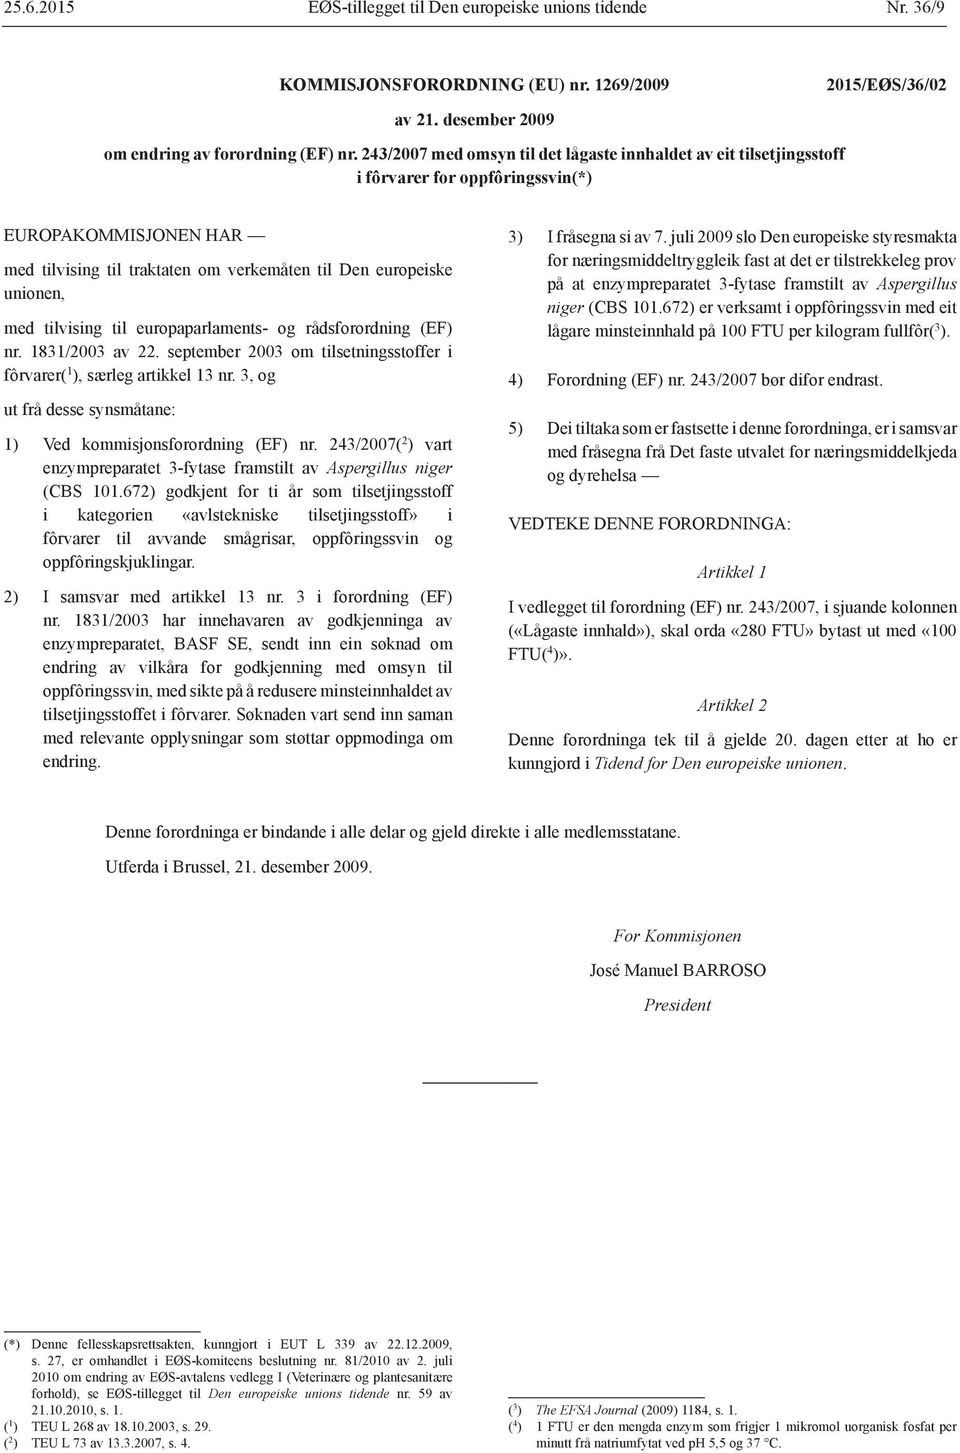 tilvising til europaparlaments- og rådsforordning (EF) nr. 1831/2003 av 22. september 2003 om tilsetningsstoffer i fôrvarer( 1 ), særleg artikkel 13 nr.